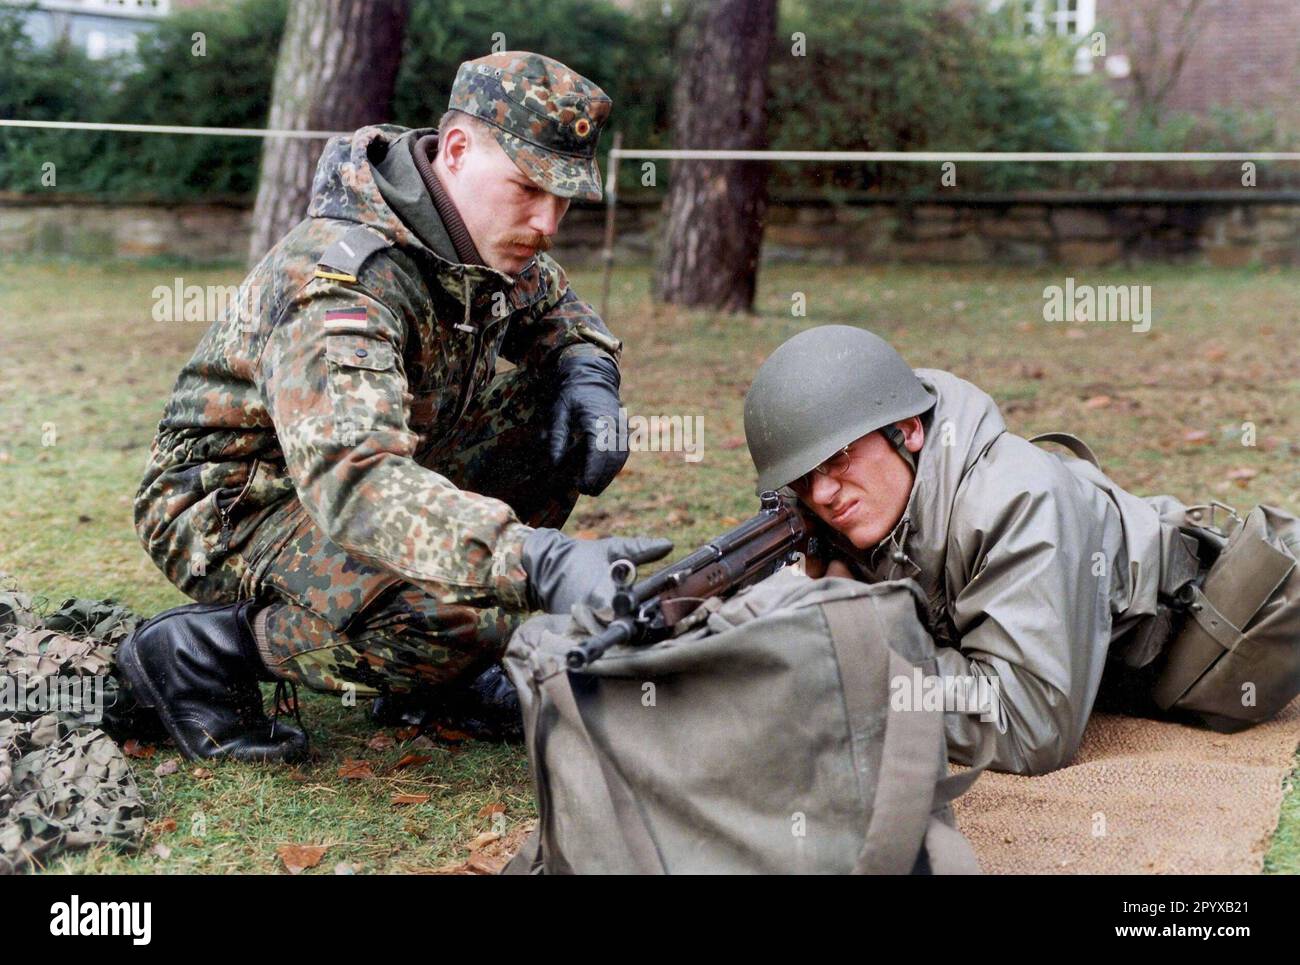 Date d'enregistrement : 28.04.1997 formation de recrues dans les forces armées allemandes au Waldkaserne Hilden, formation de combat à l'arme. [traduction automatique] Banque D'Images